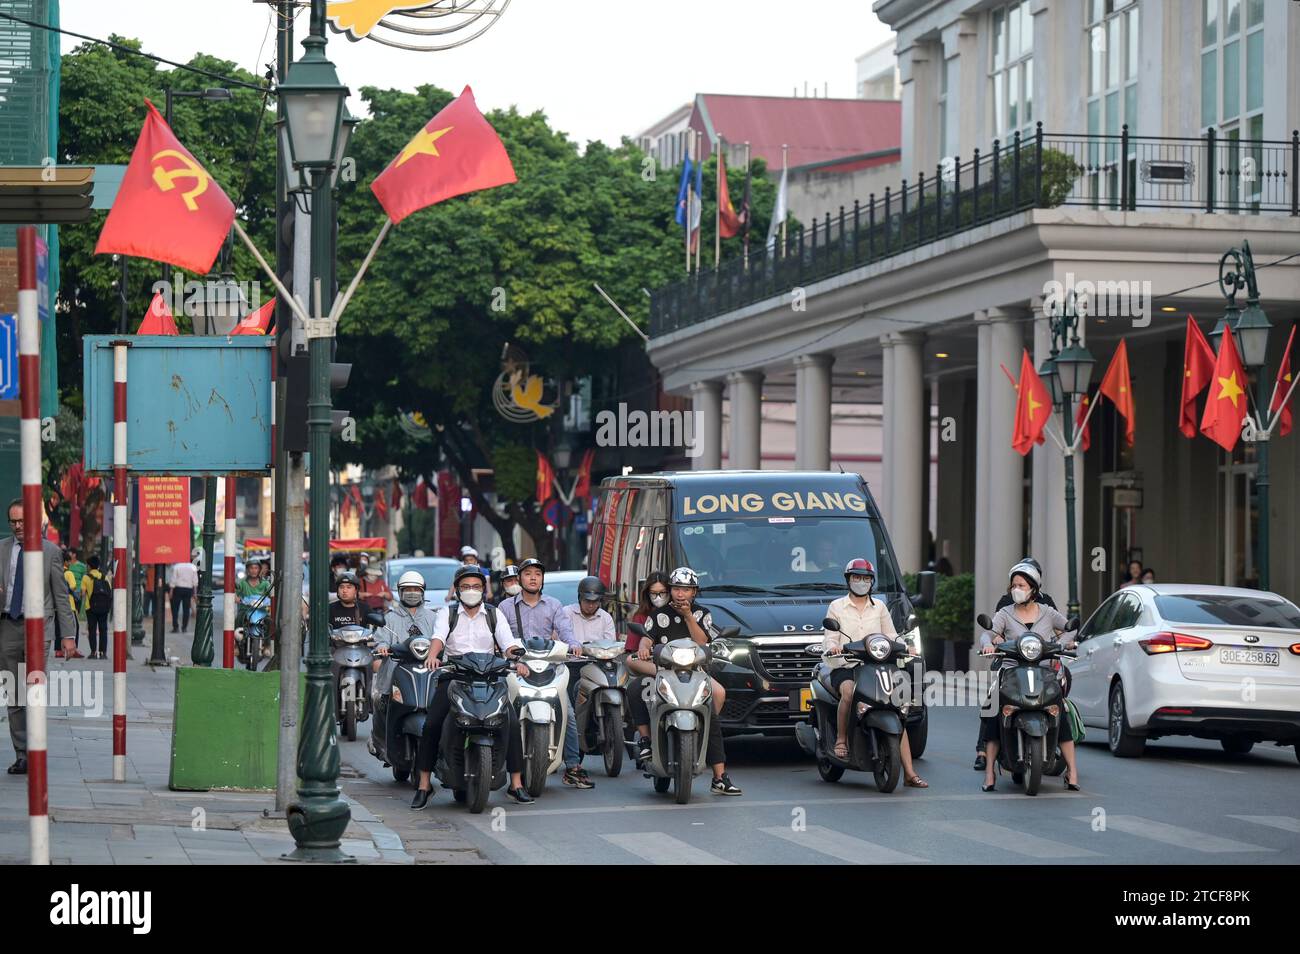 VIETNAM, Hanoi, quartier français, rue principale avec drapeau rouge du parti communiste et drapeau national du Vietnam avec étoile jaune, circulation pendant l'heure de pointe, deux-roues à la traversée Banque D'Images